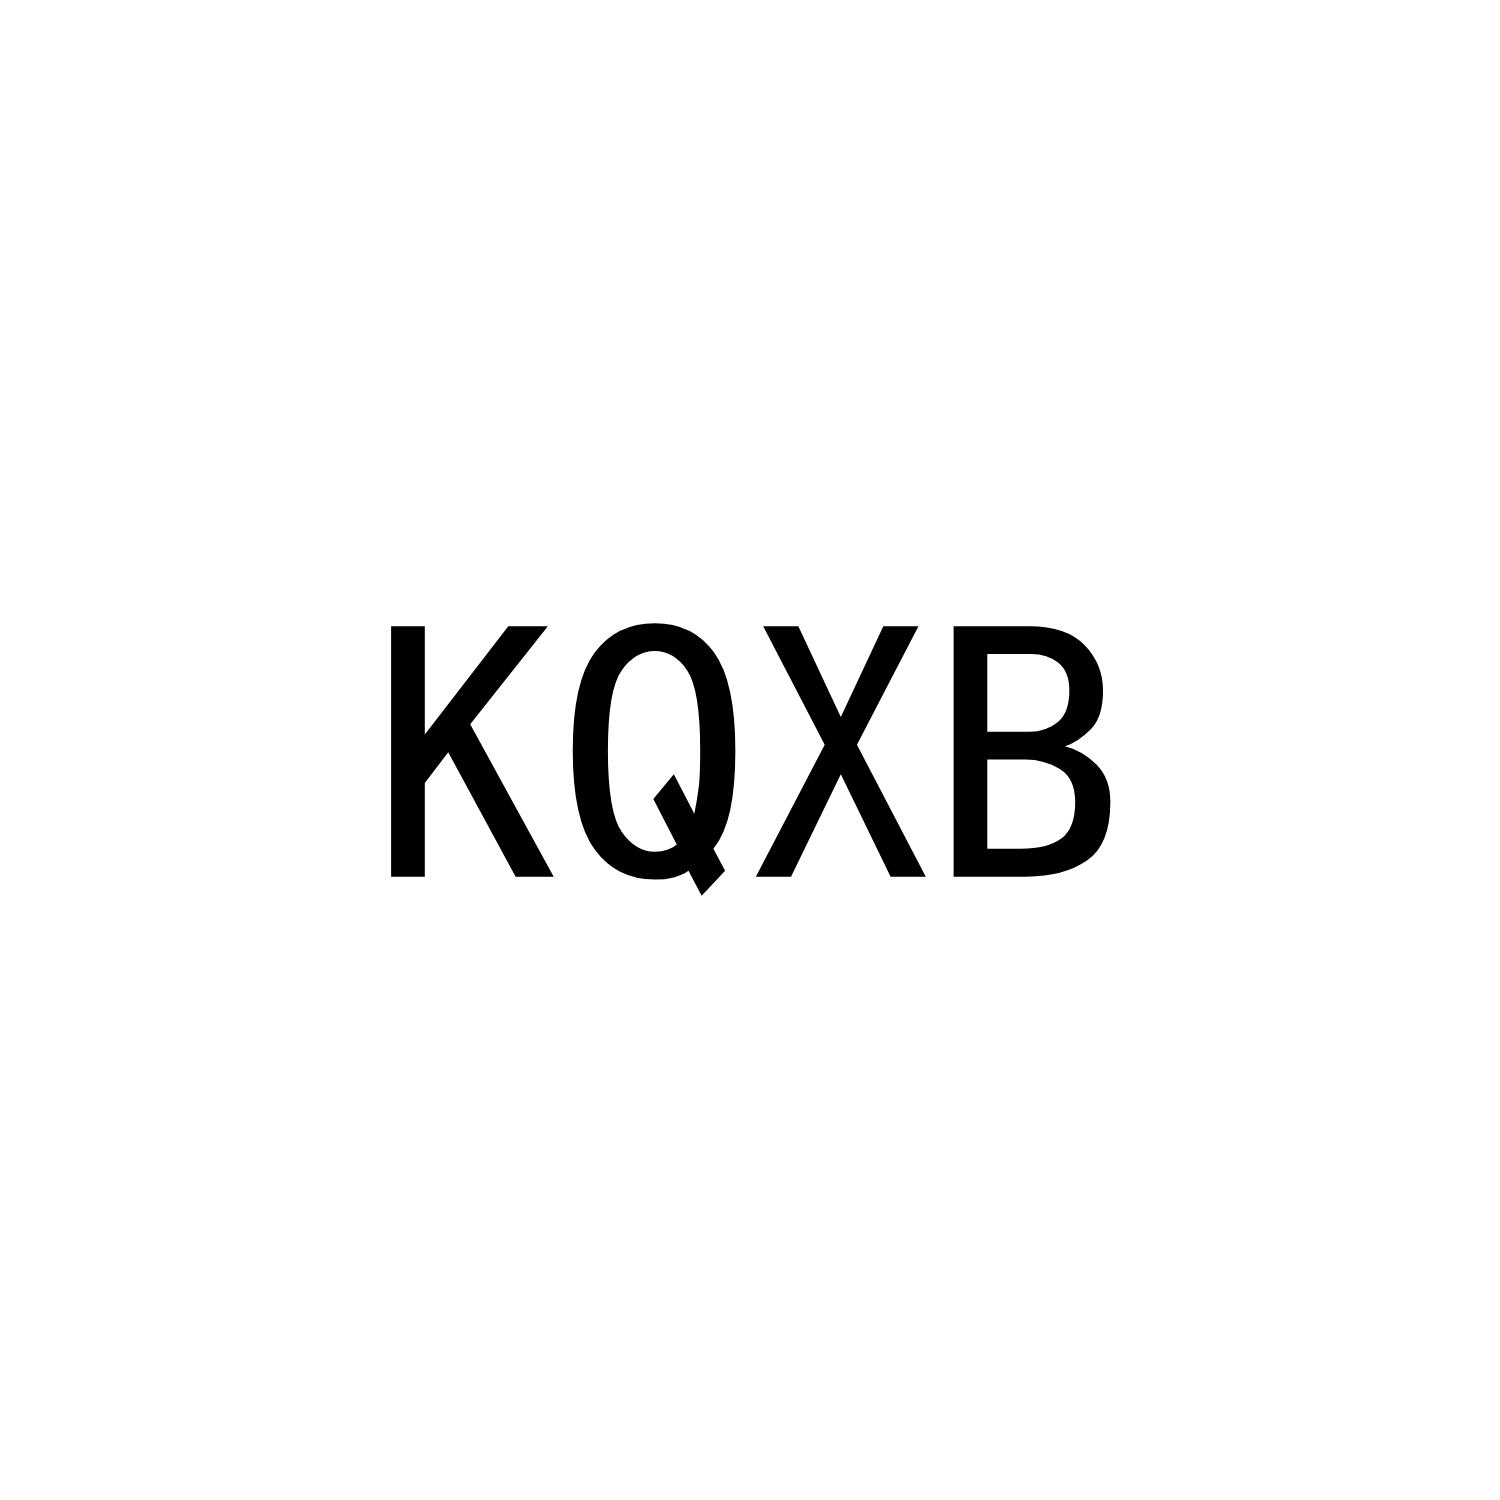 KQXB